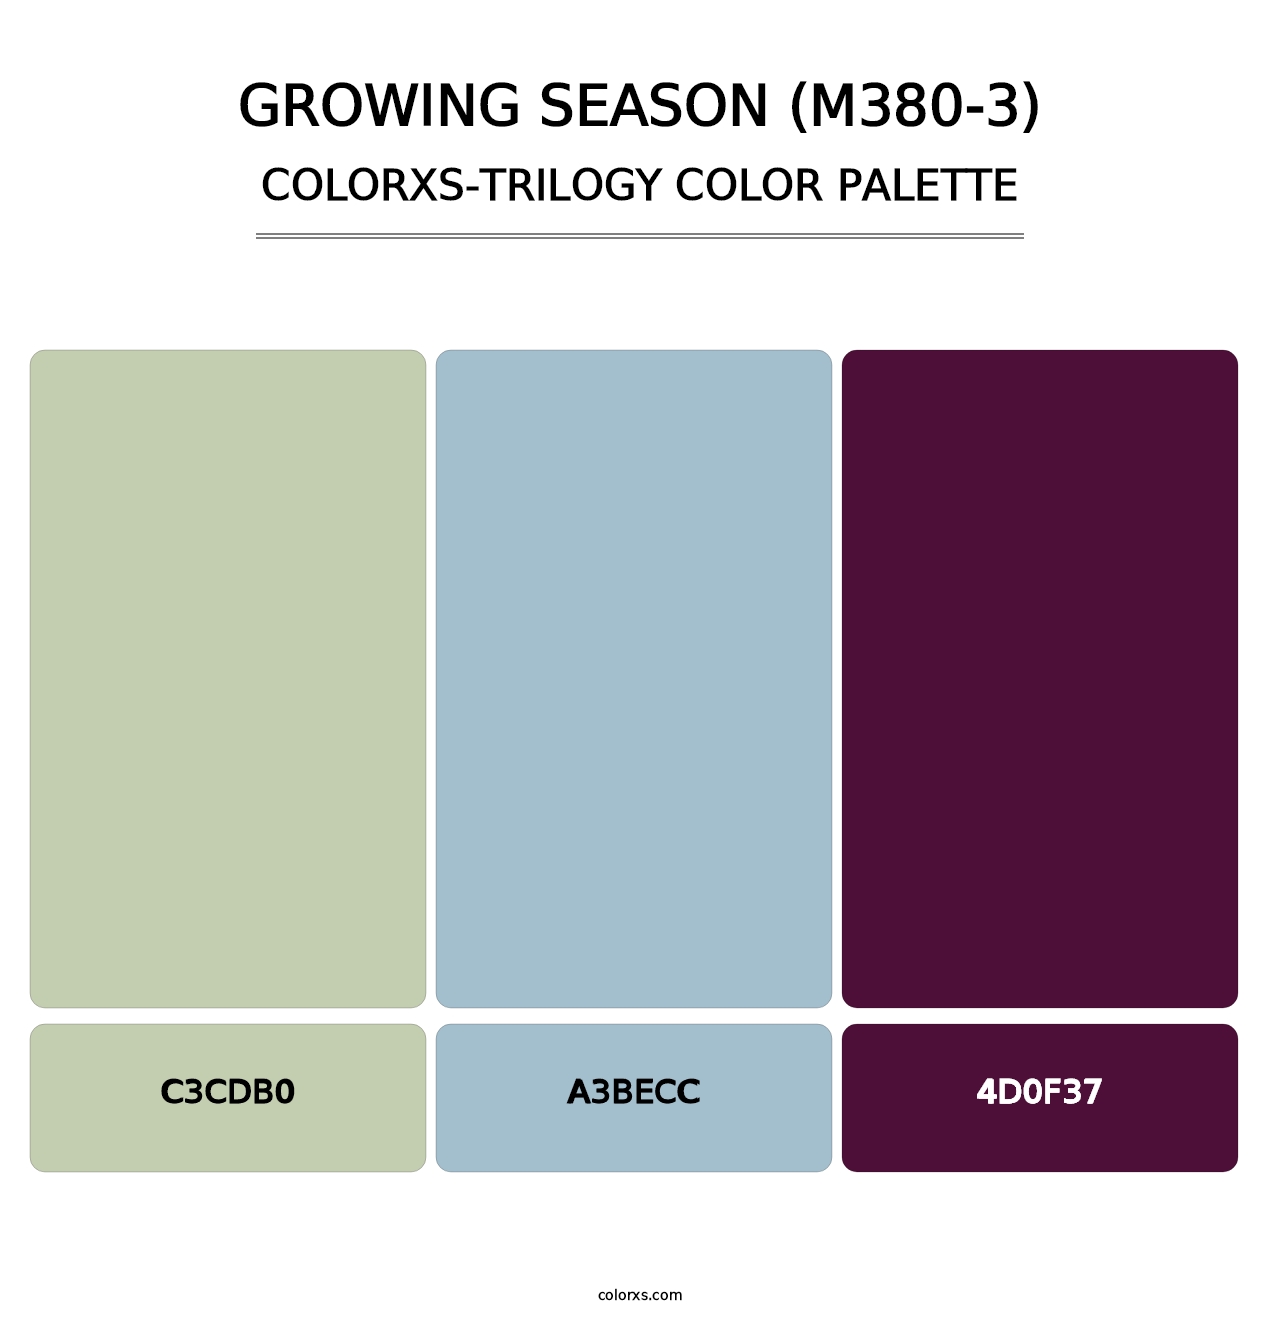 Growing Season (M380-3) - Colorxs Trilogy Palette